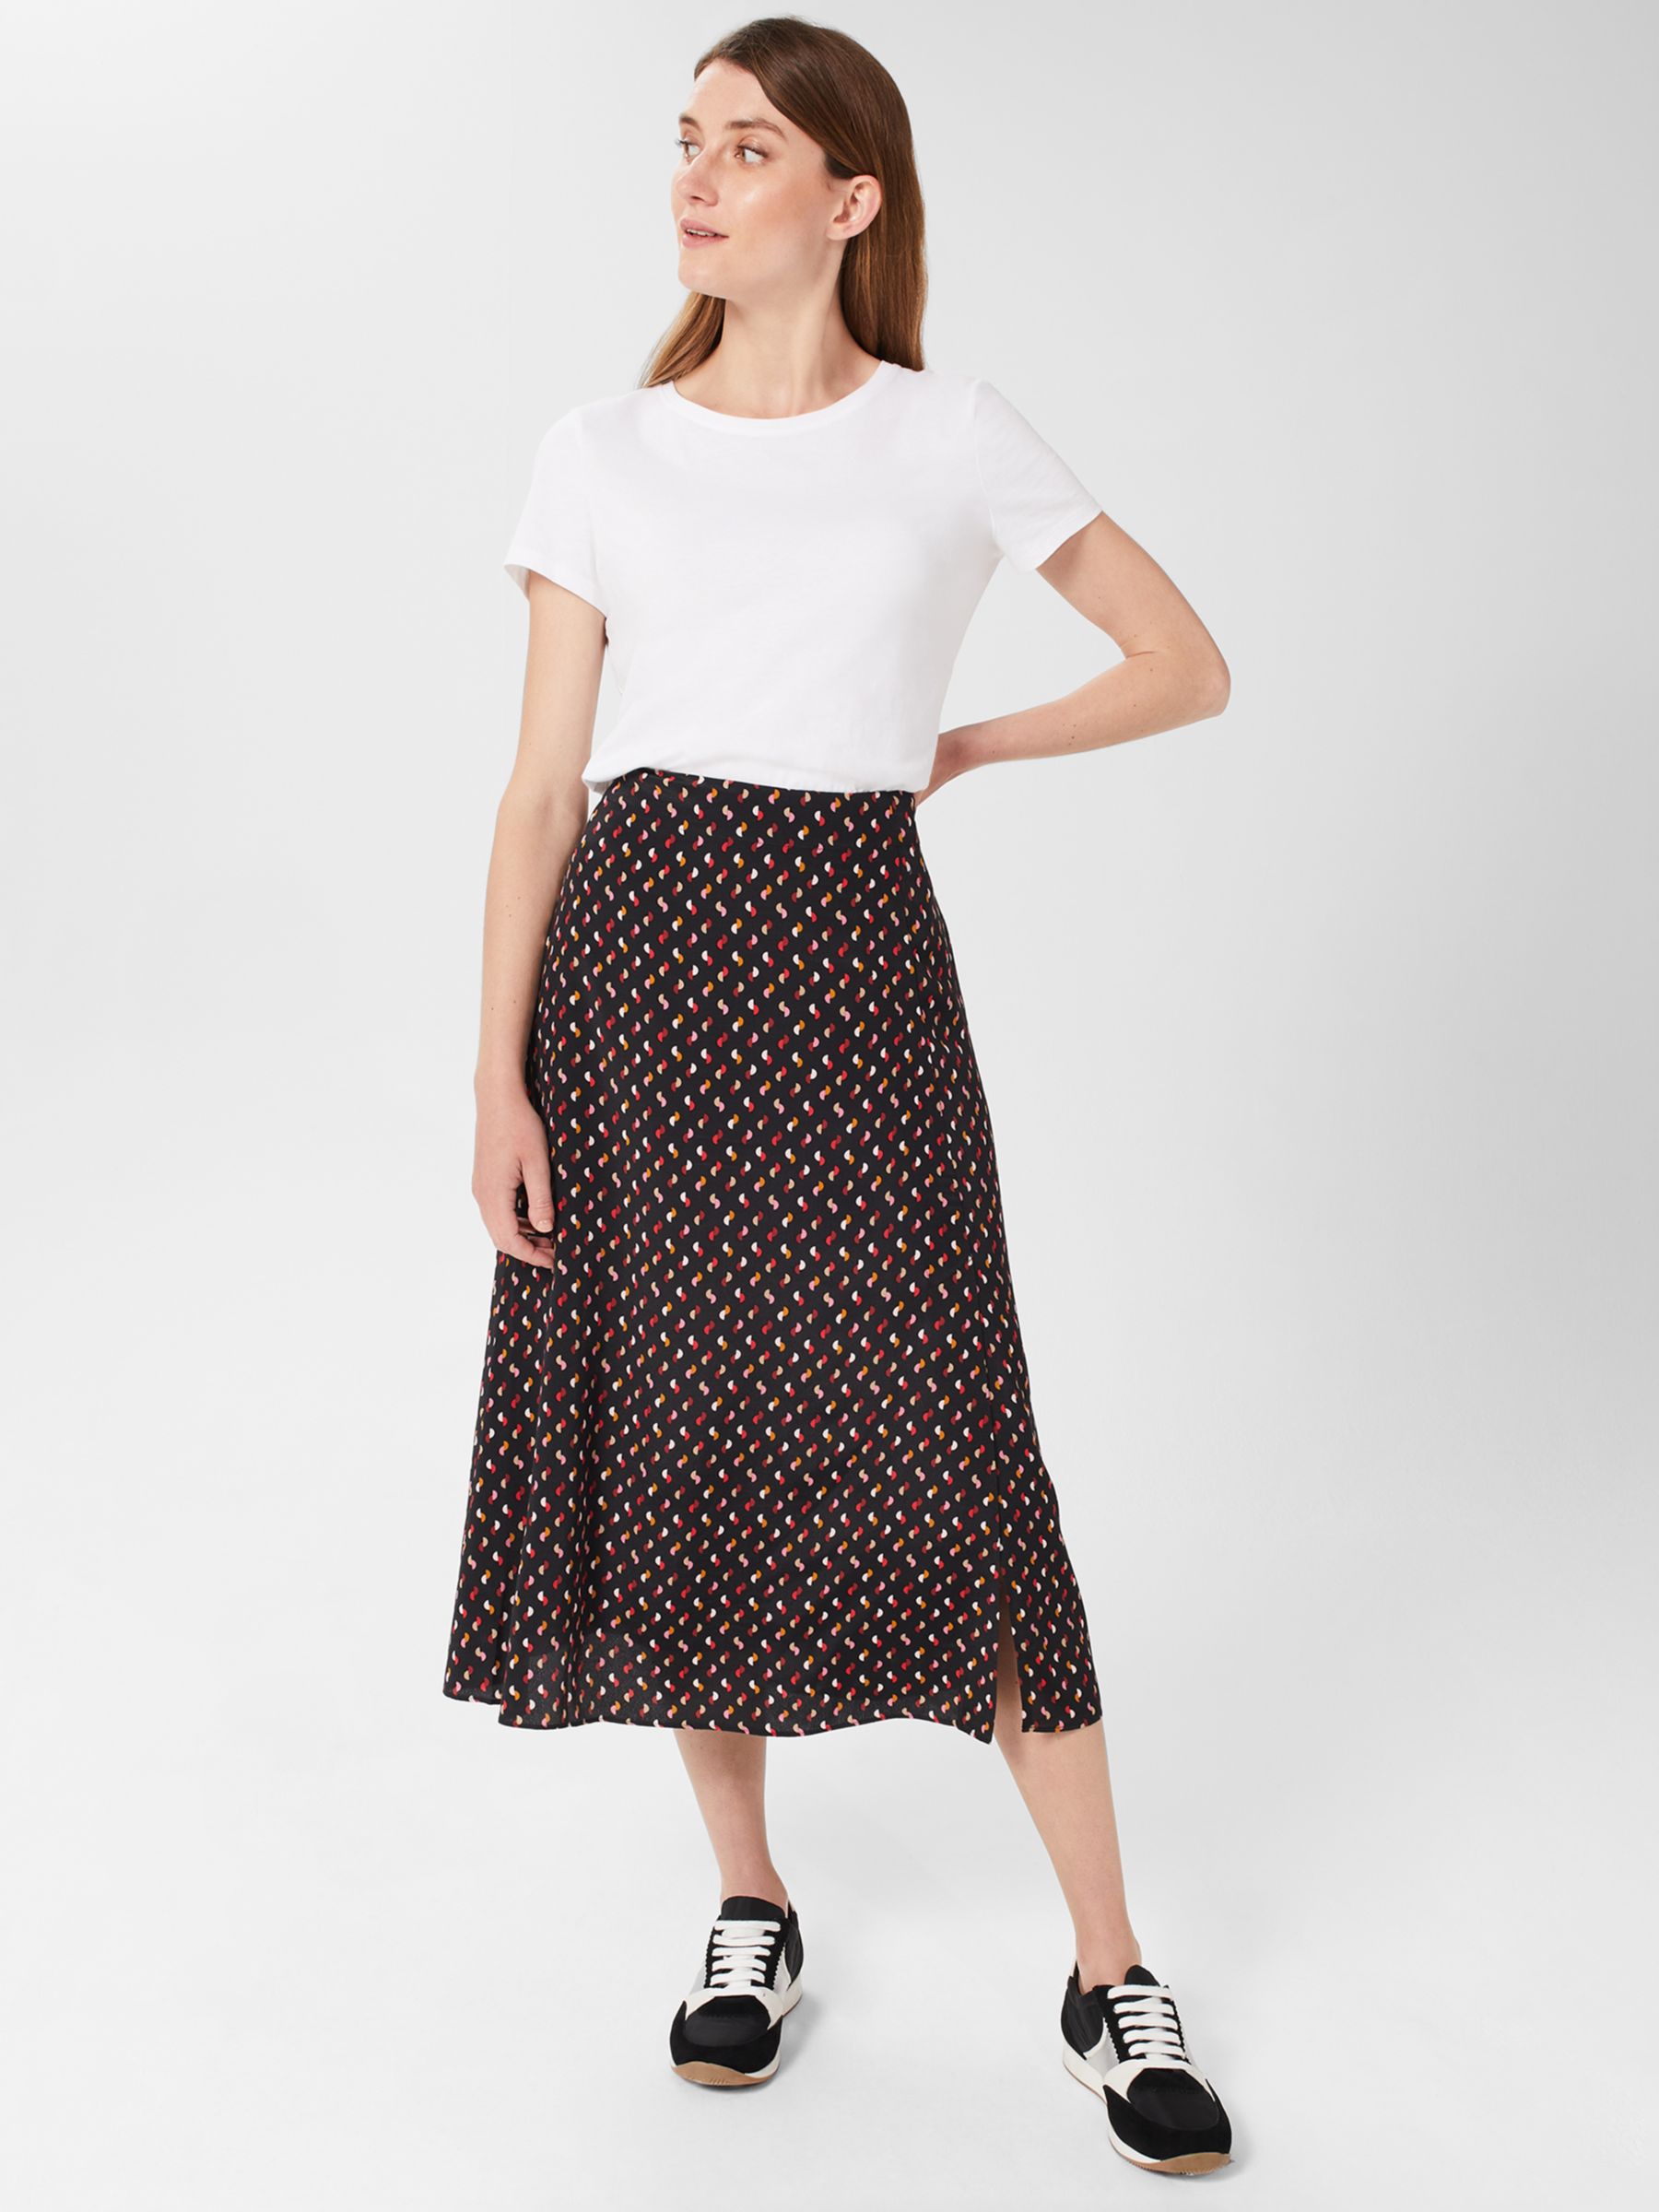 Hobbs Annette Spot Print Midi Skirt, Black/Multi at John Lewis & Partners